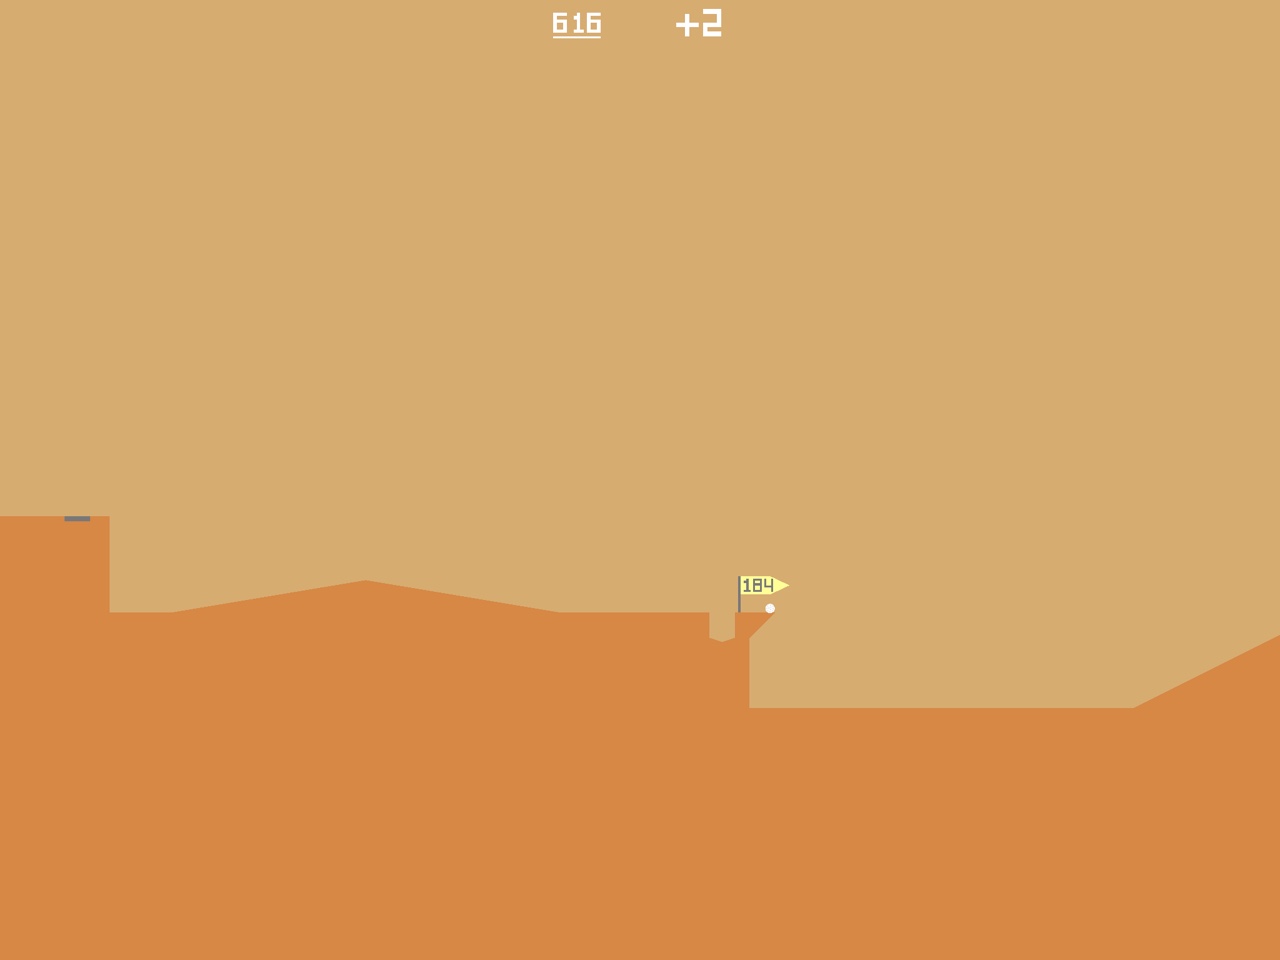 desert-golfing-00016